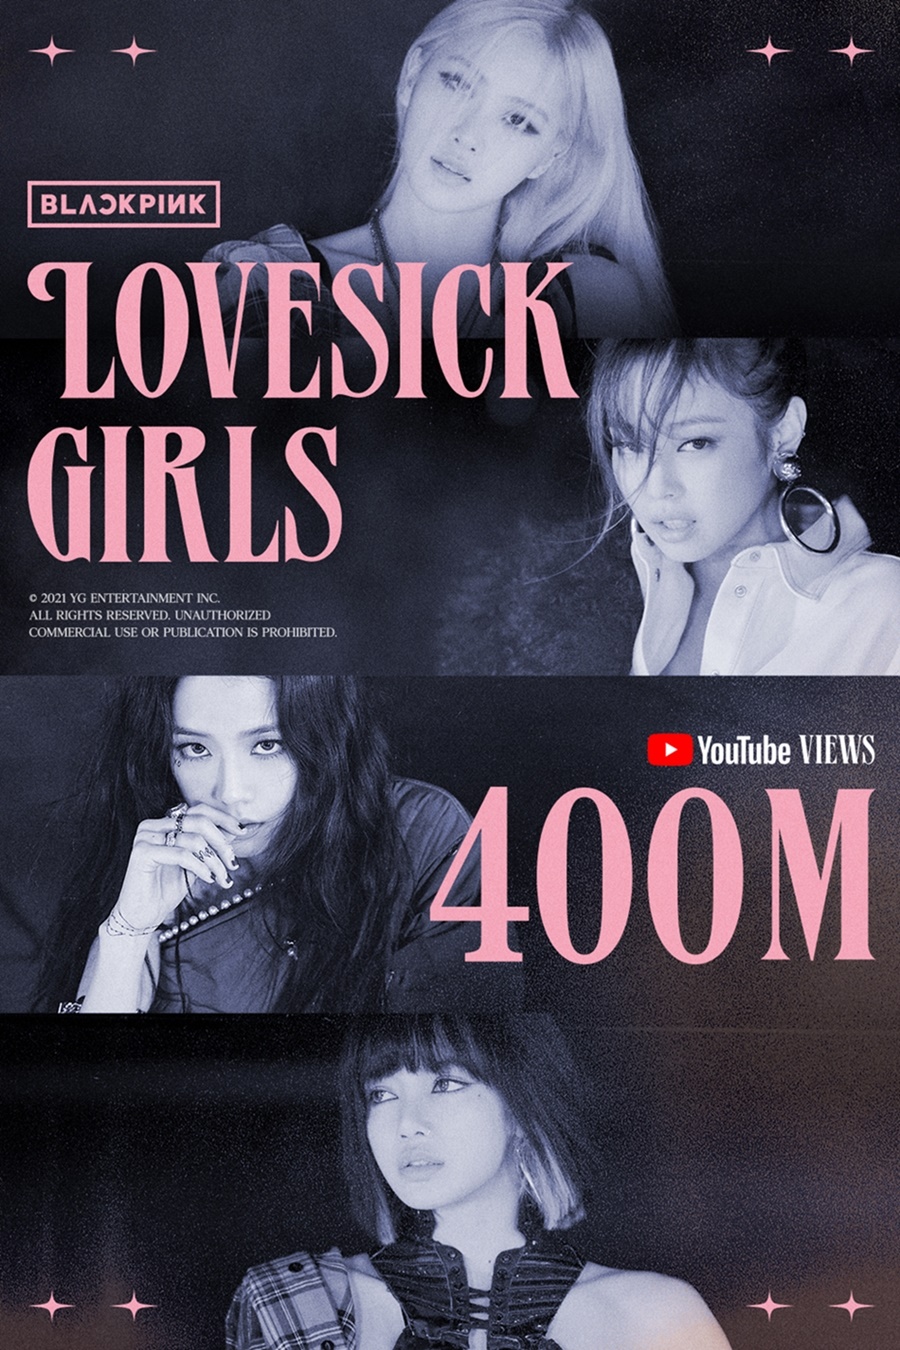 블랙핑크, 정규 1집 타이틀곡 'Lovesick Girls' MV 4억뷰 돌파